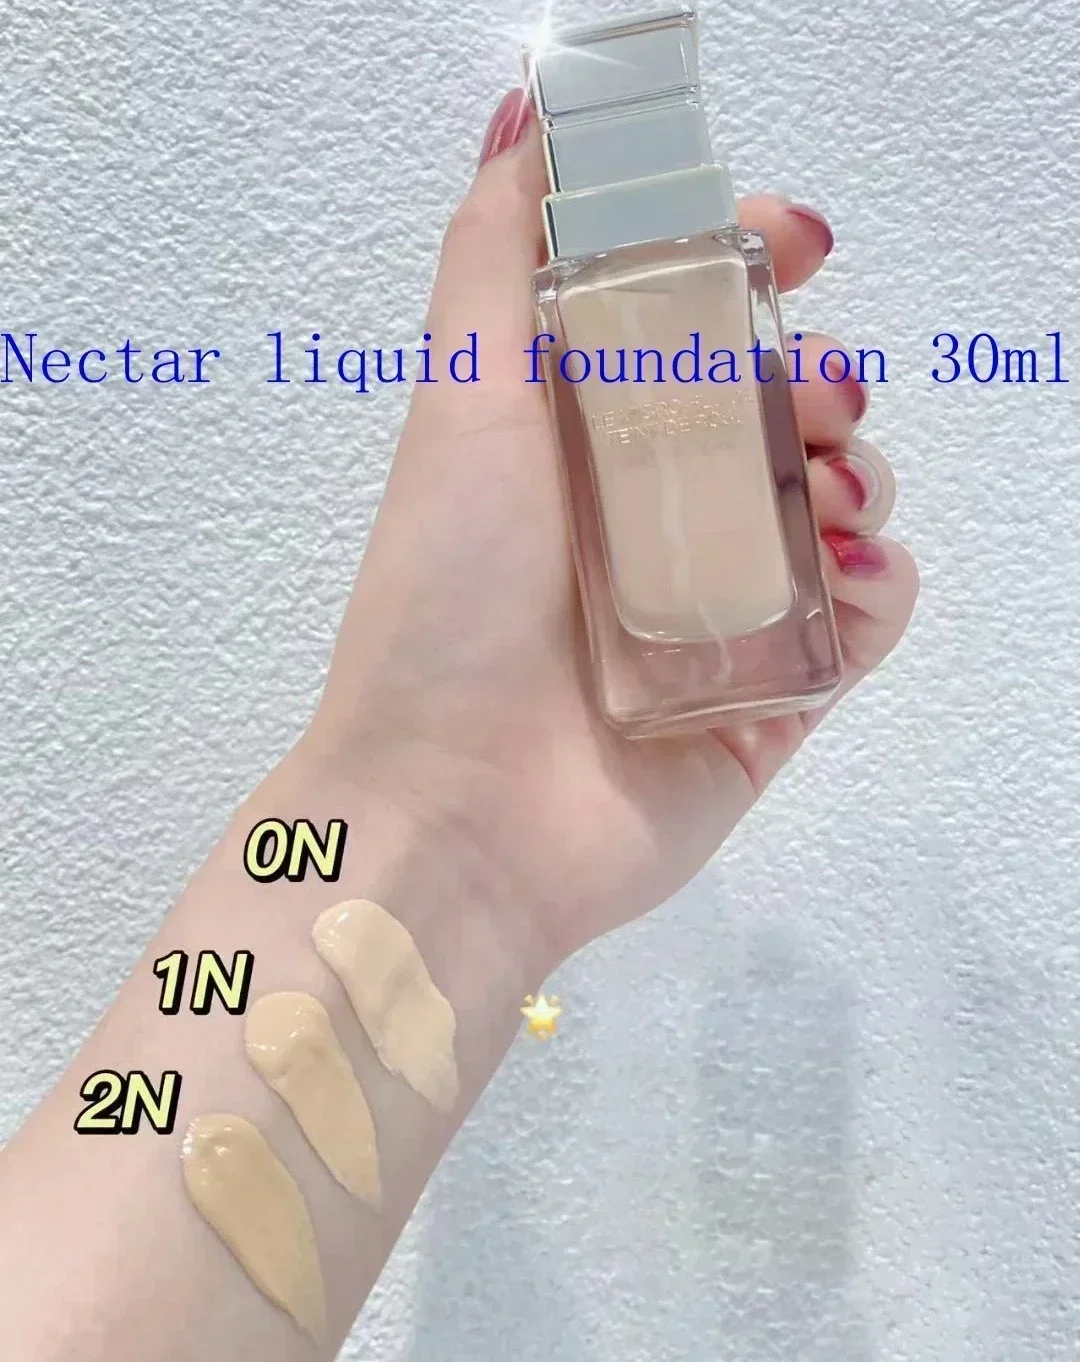 

New Serum Foundation Liquid 30ML with brush